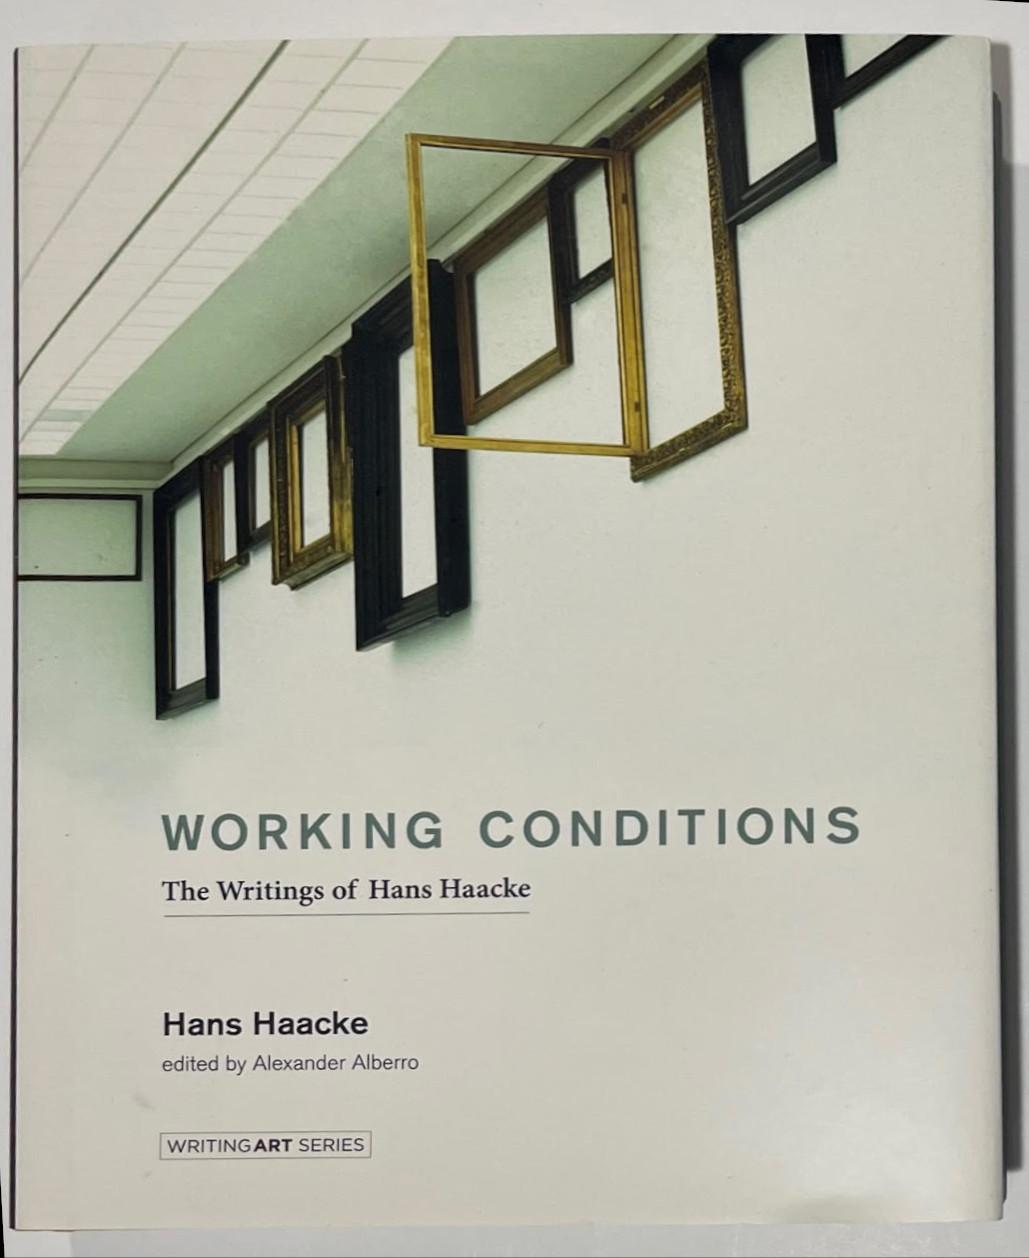 Hans Haacke
Condit (signé à la main par Hans Haacke), 2016
Monographie reliée avec jaquette (signée par Hans Haacke)
Signé à la main par Hans Haacke sur la moitié de la page de titre.
9 1/2 × 8 × 1 pouces
Un superbe cadeau ! Il n'en a pas signé